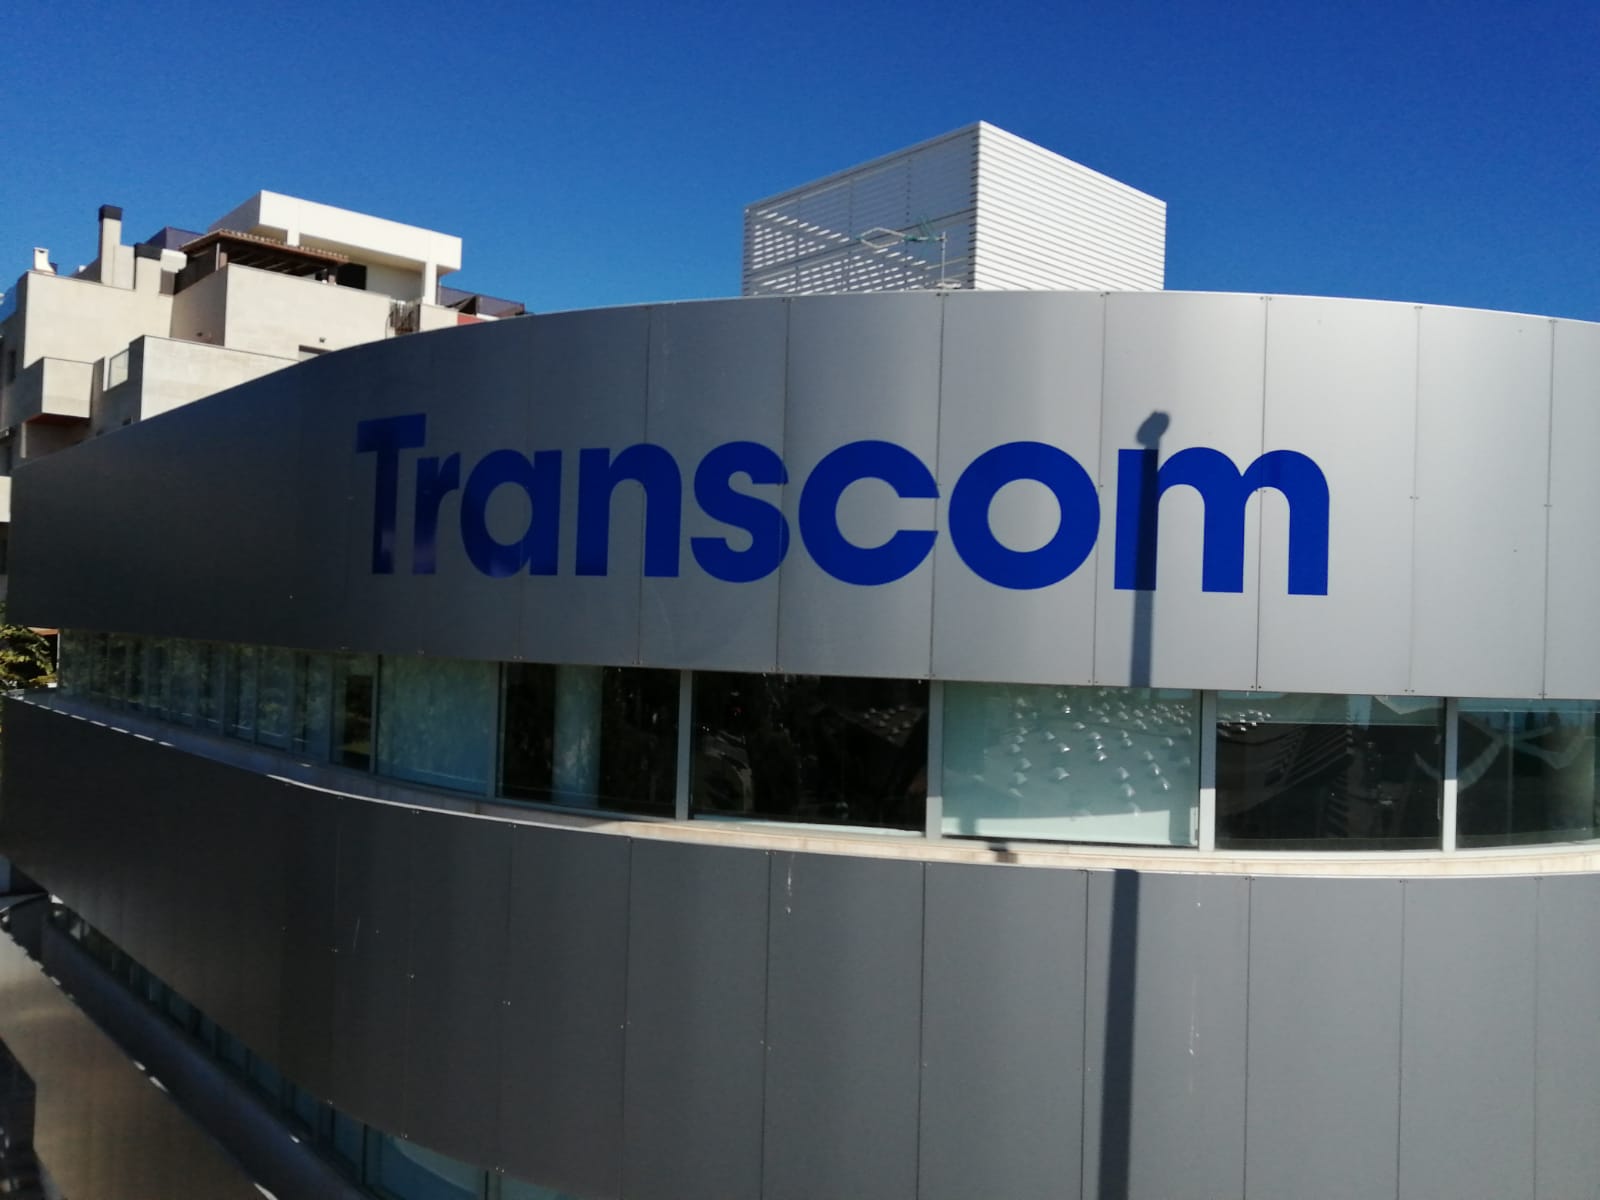 Transcom Torremolinos facade and logo photo